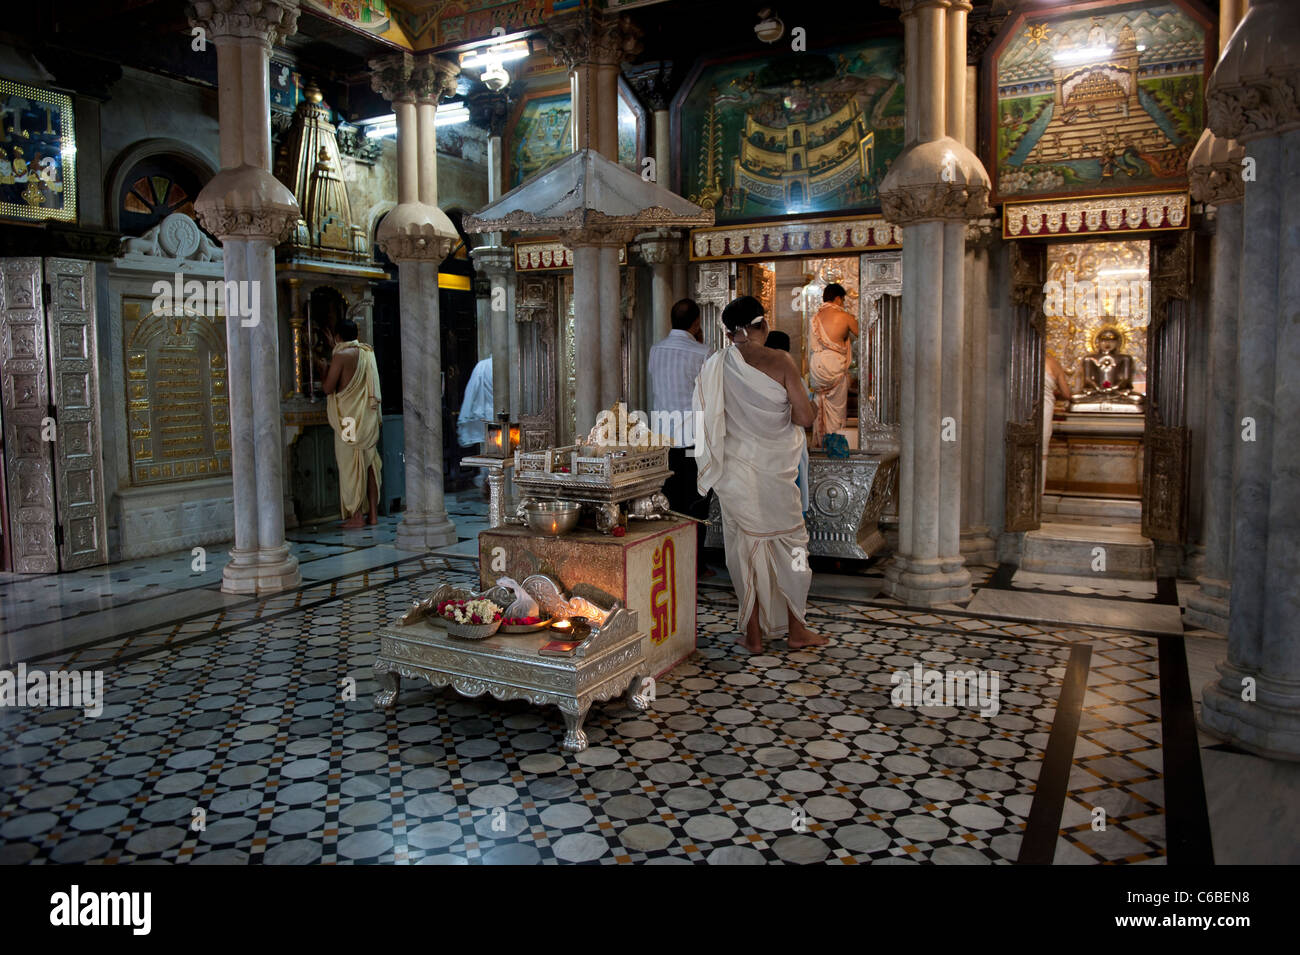 Inside Babu Amichand Panalal Adishwarji Jain Temple in Malabar Hill Mumbai, India Stock Photo